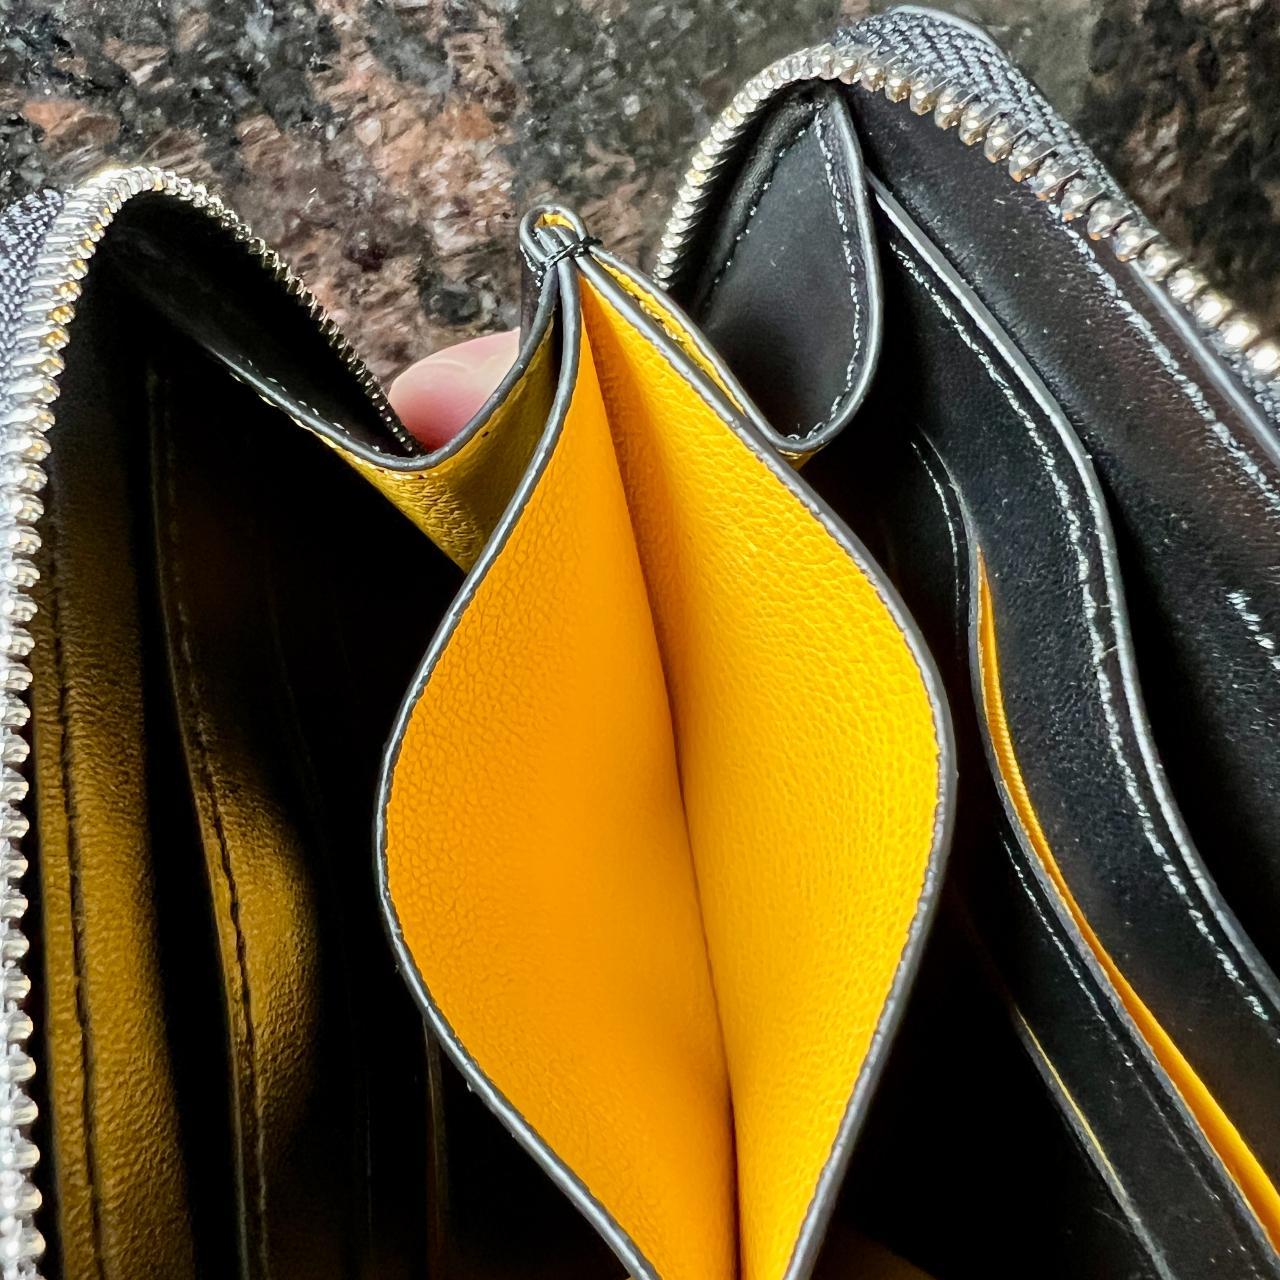 Goyard Matignon PM small wallet, Women's Fashion, Bags & Wallets